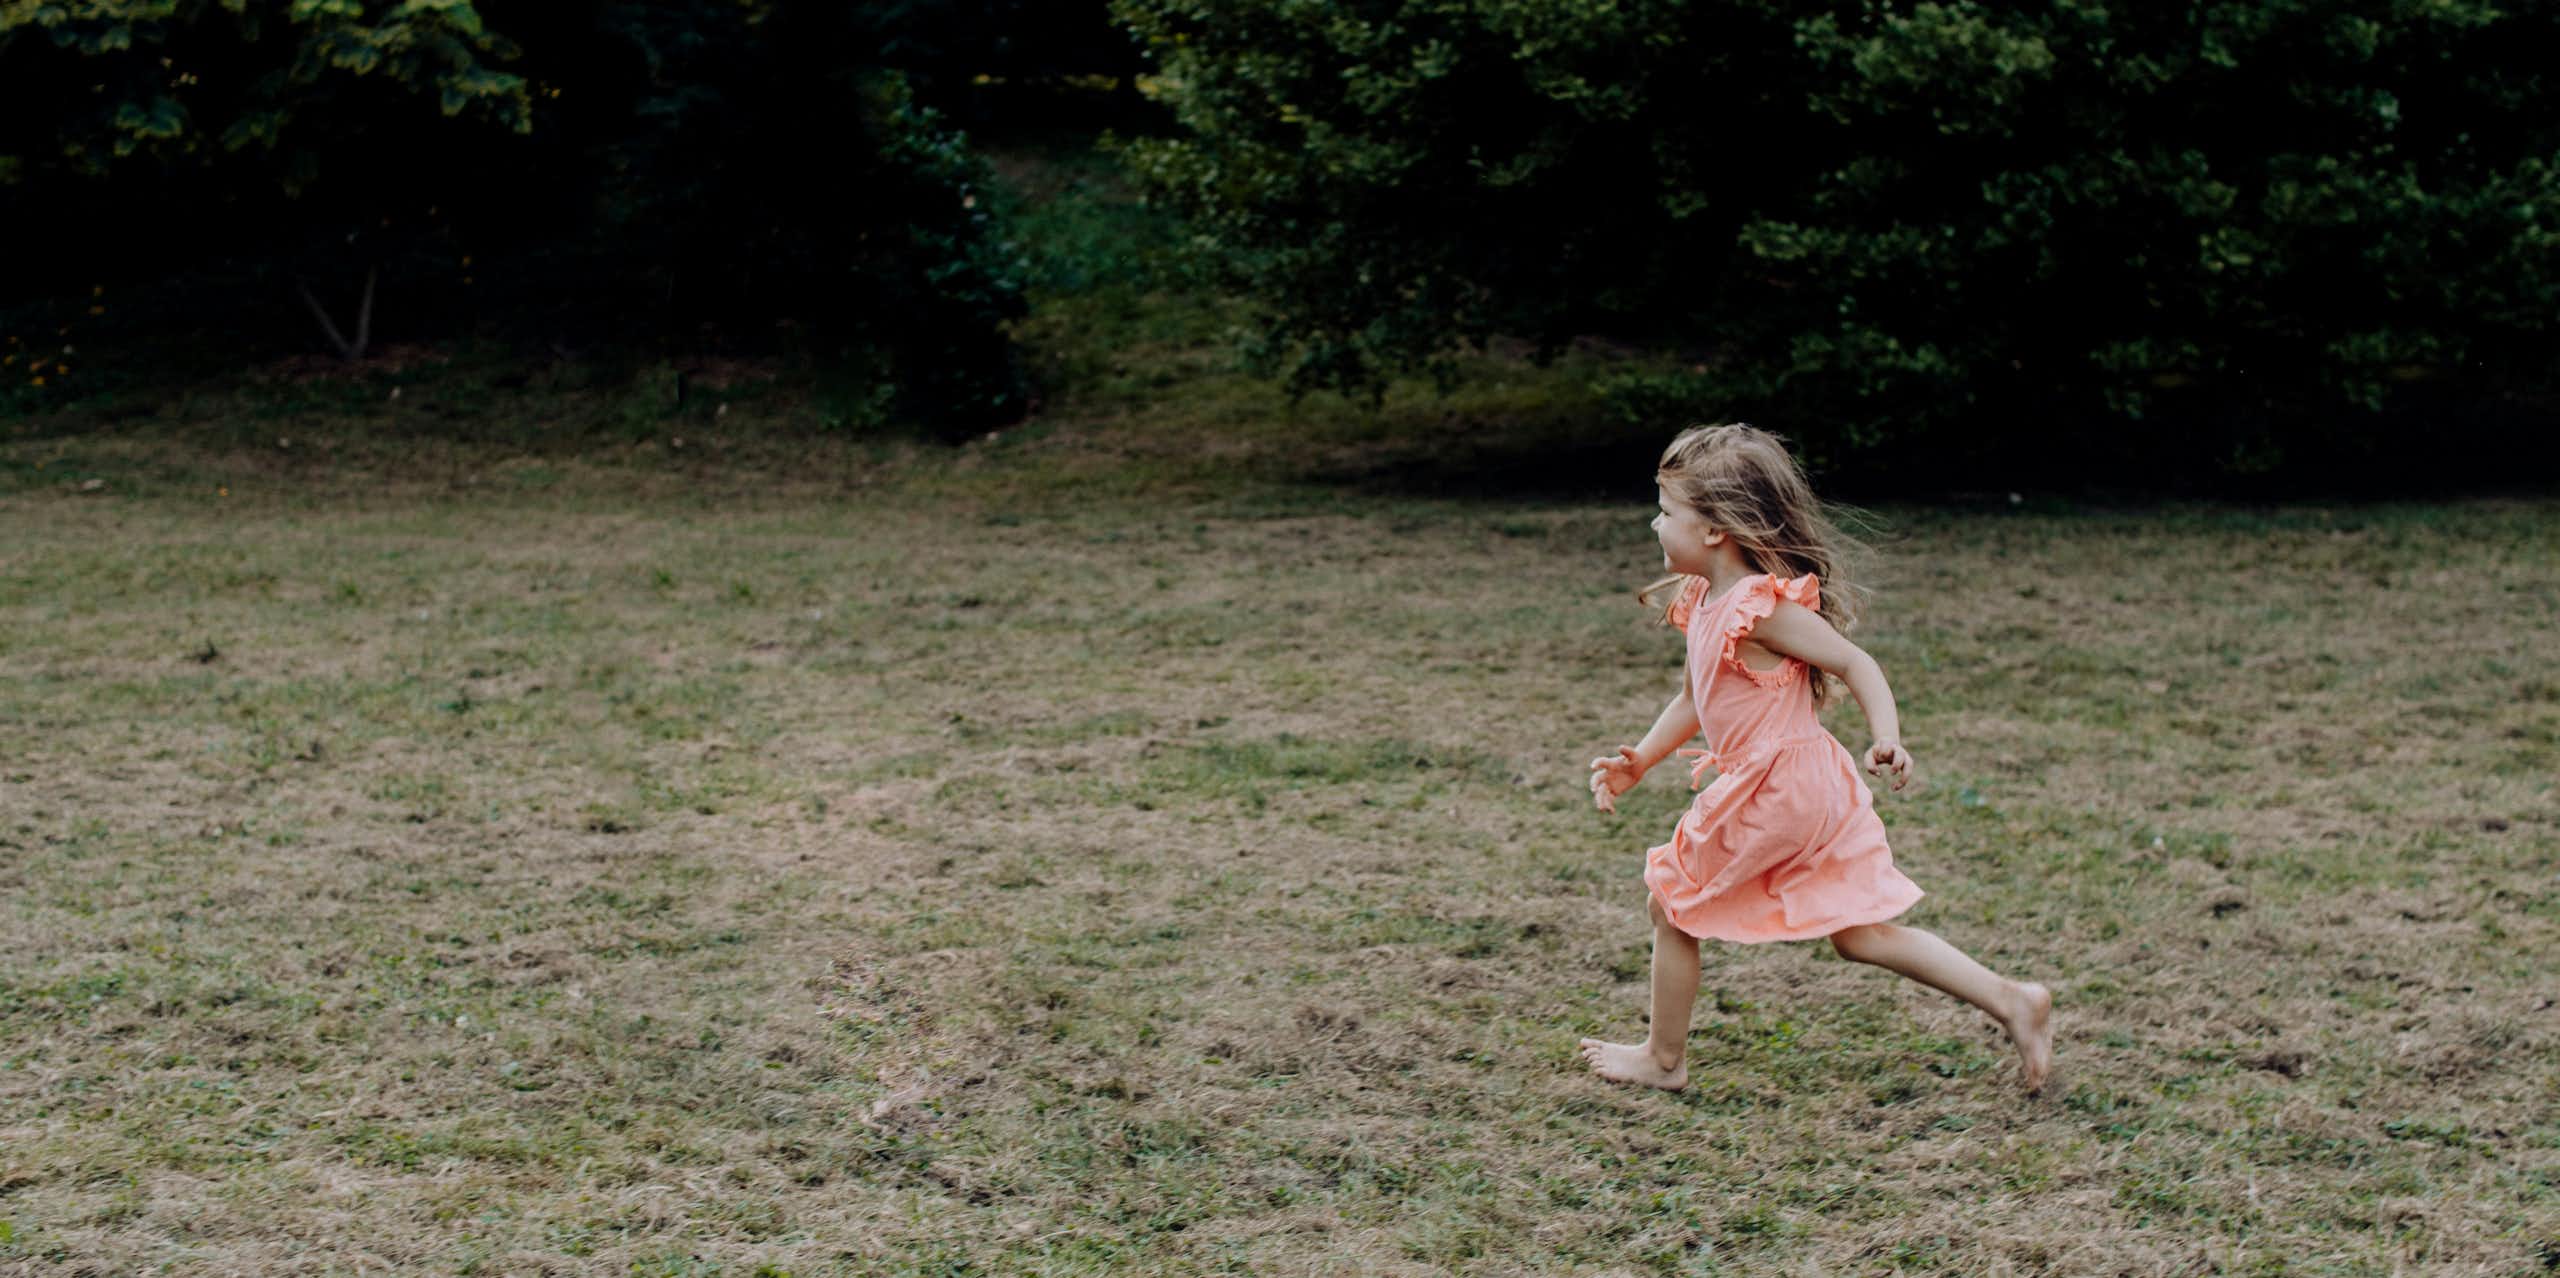 A young girl runs across a lawn